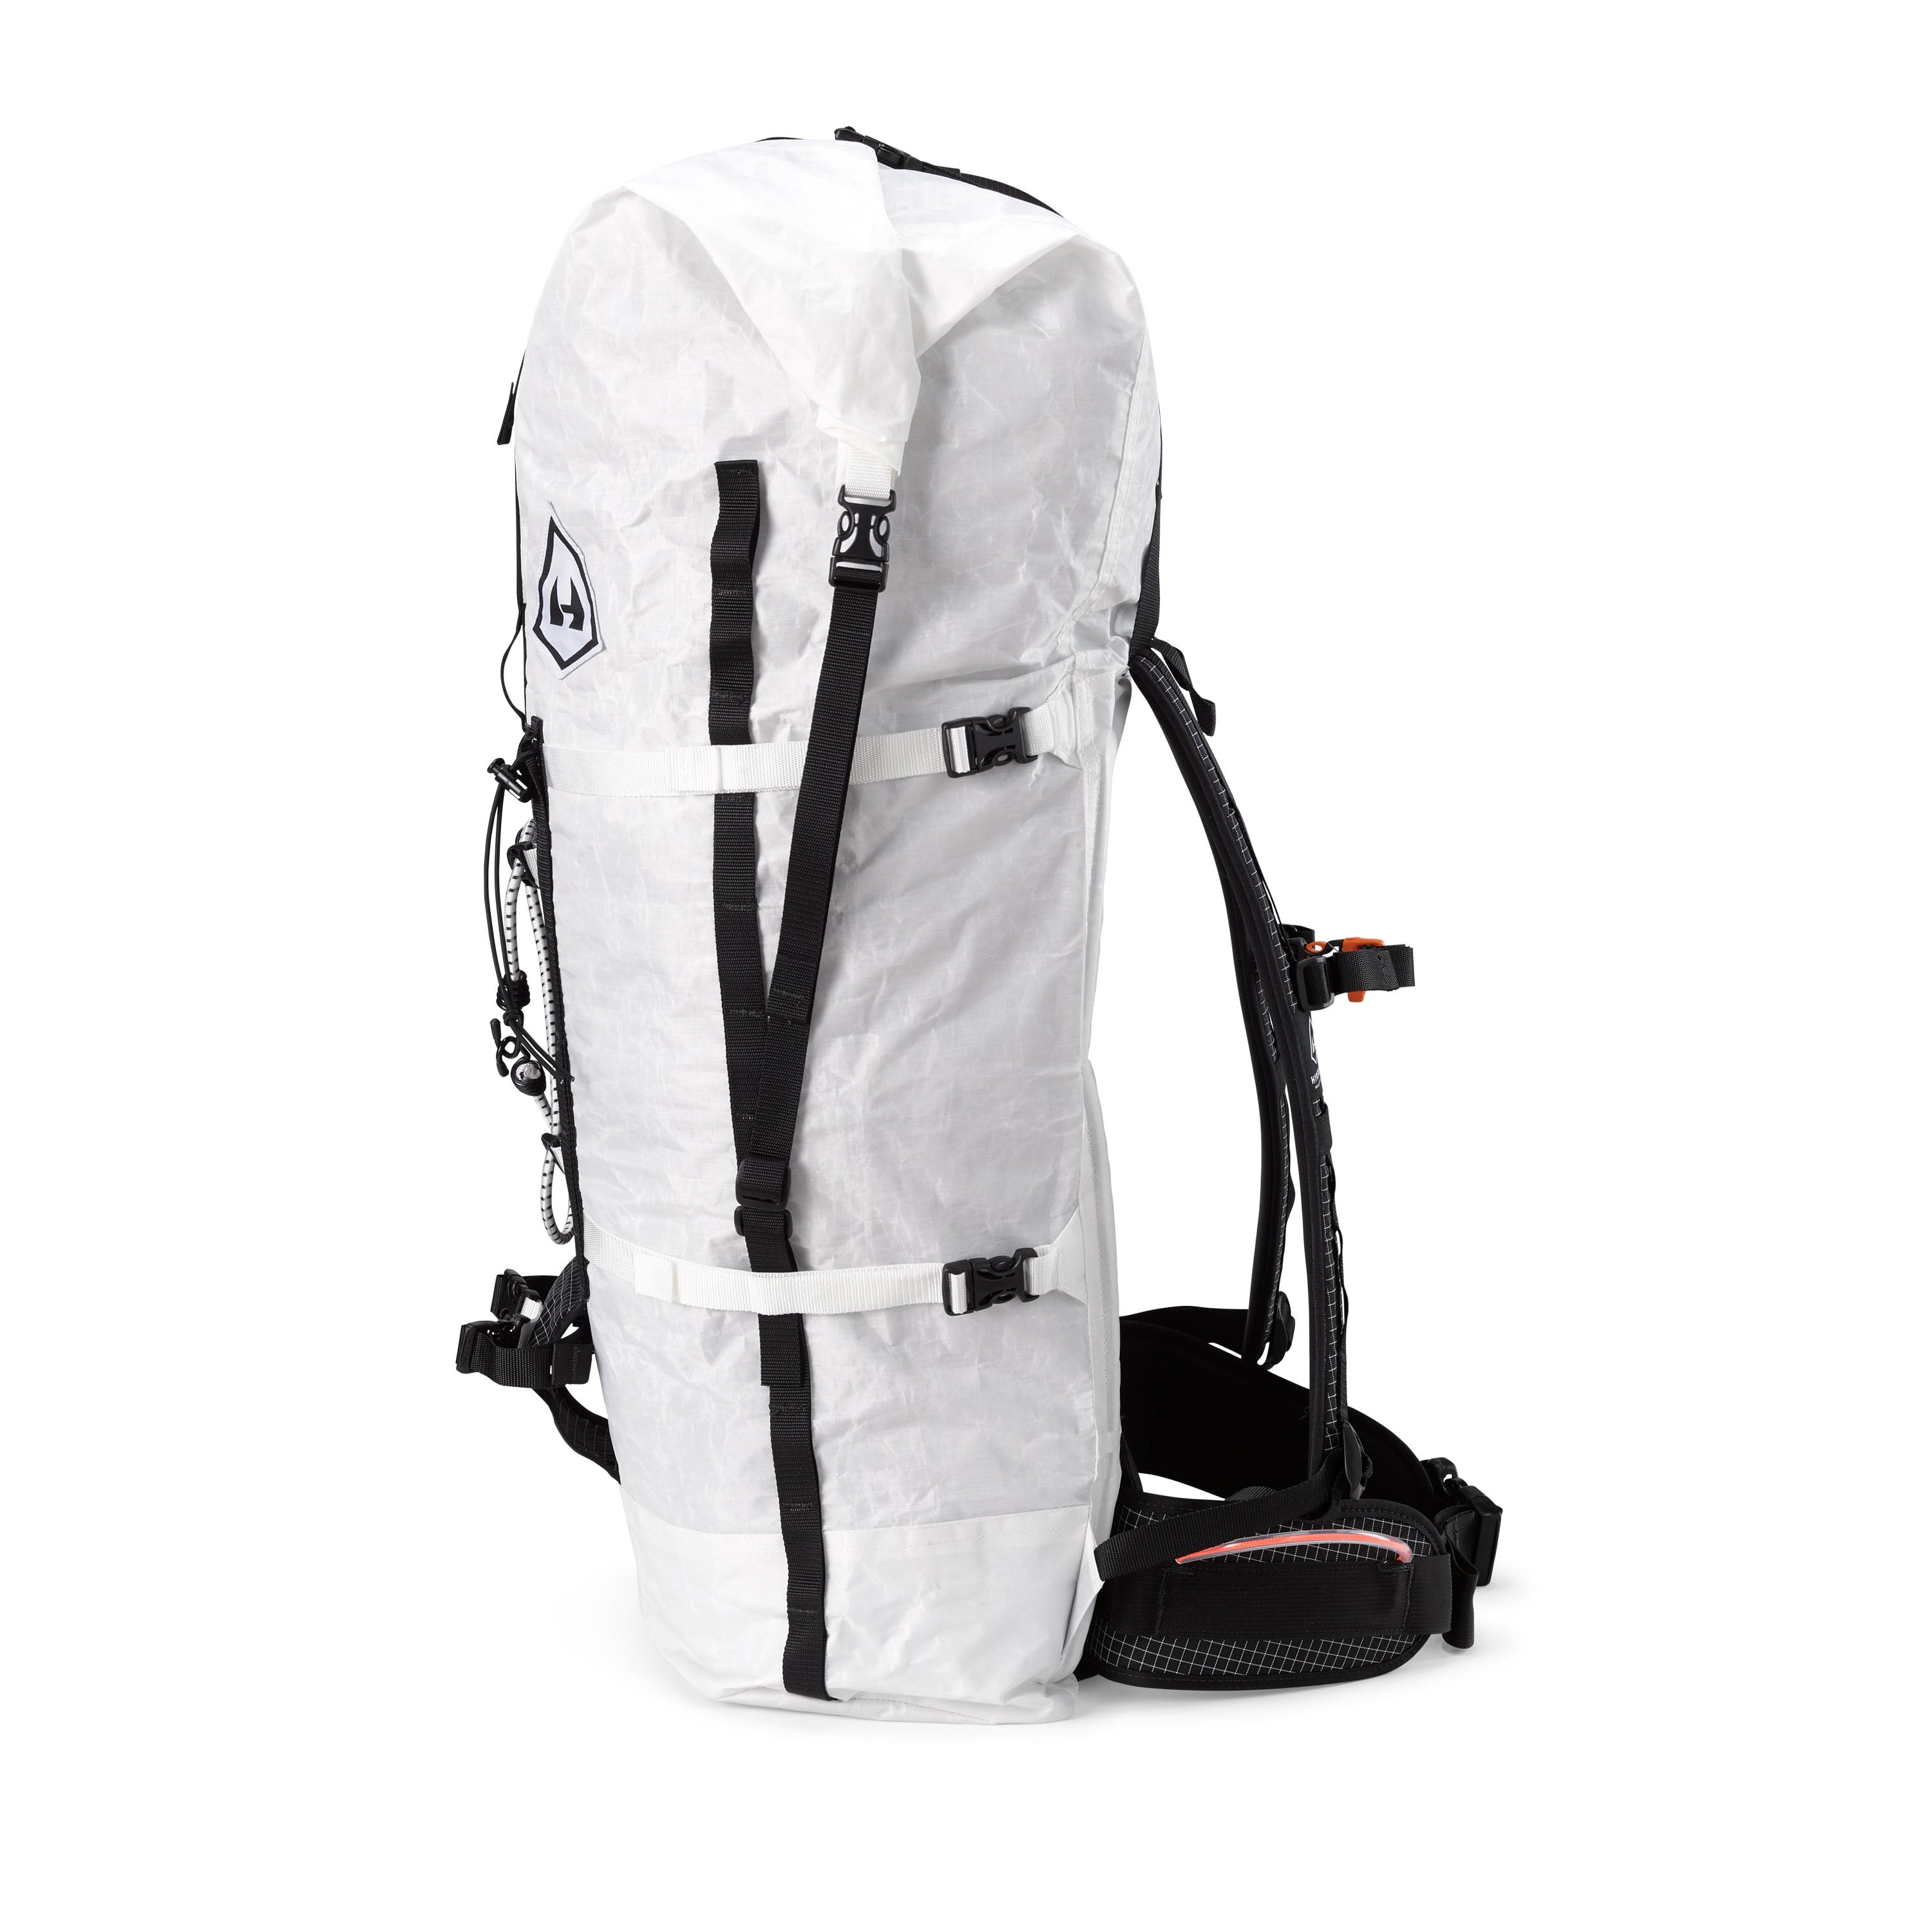 Denali Lighted Tool Bag, 55 Pockets, Backpack, Black 